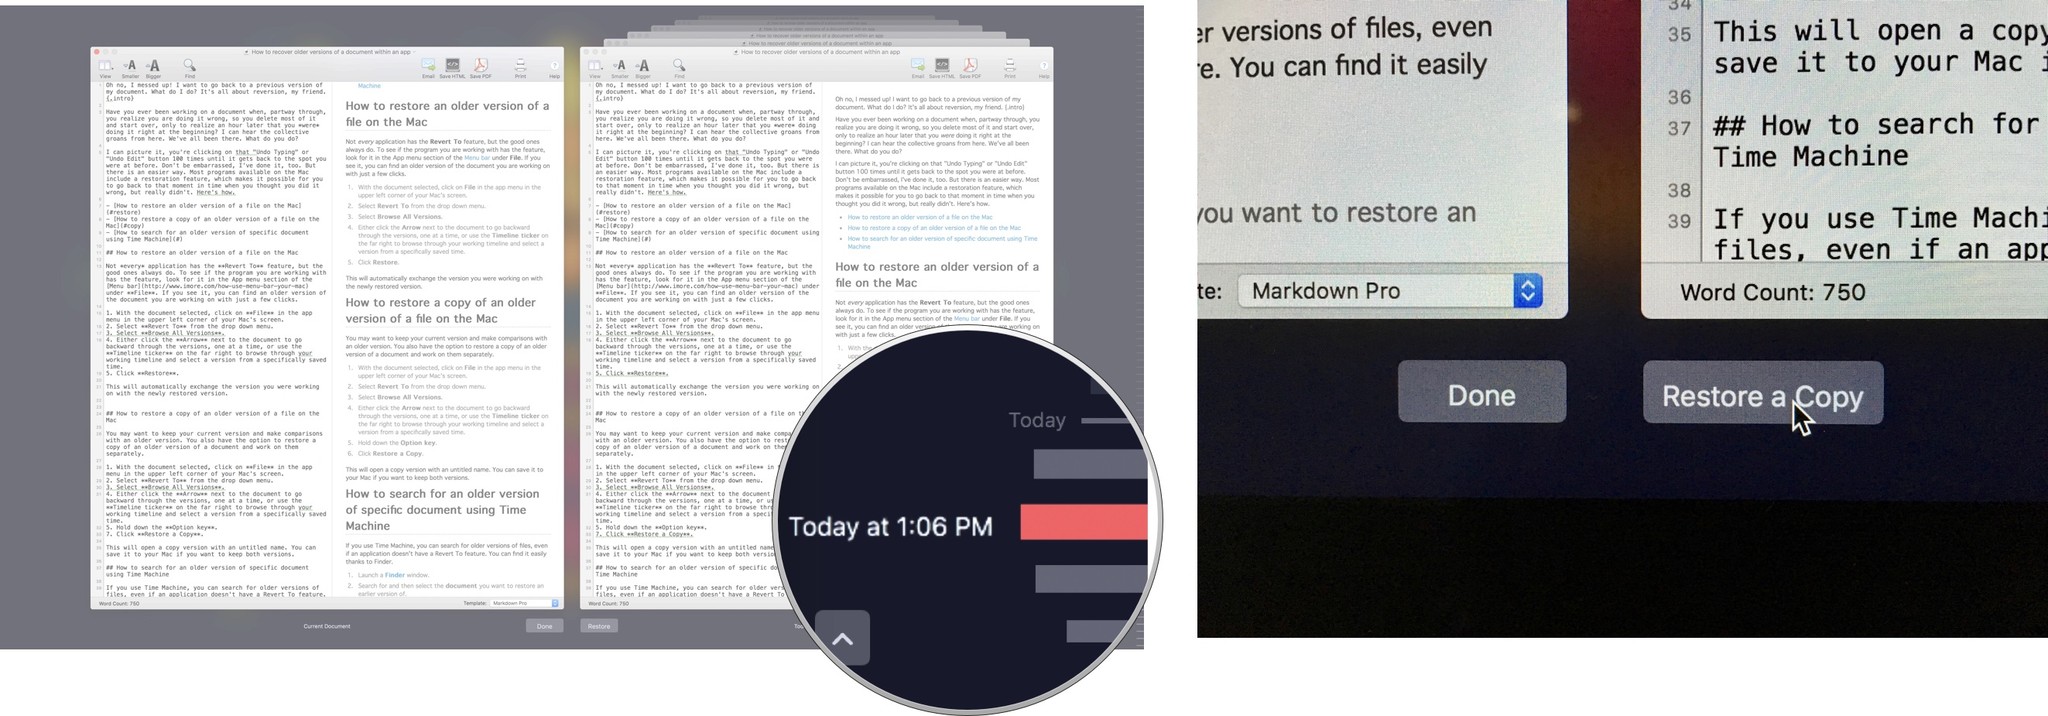 Восстановление копии документа на Mac: выберите версию, затем нажмите «Восстановить копию».